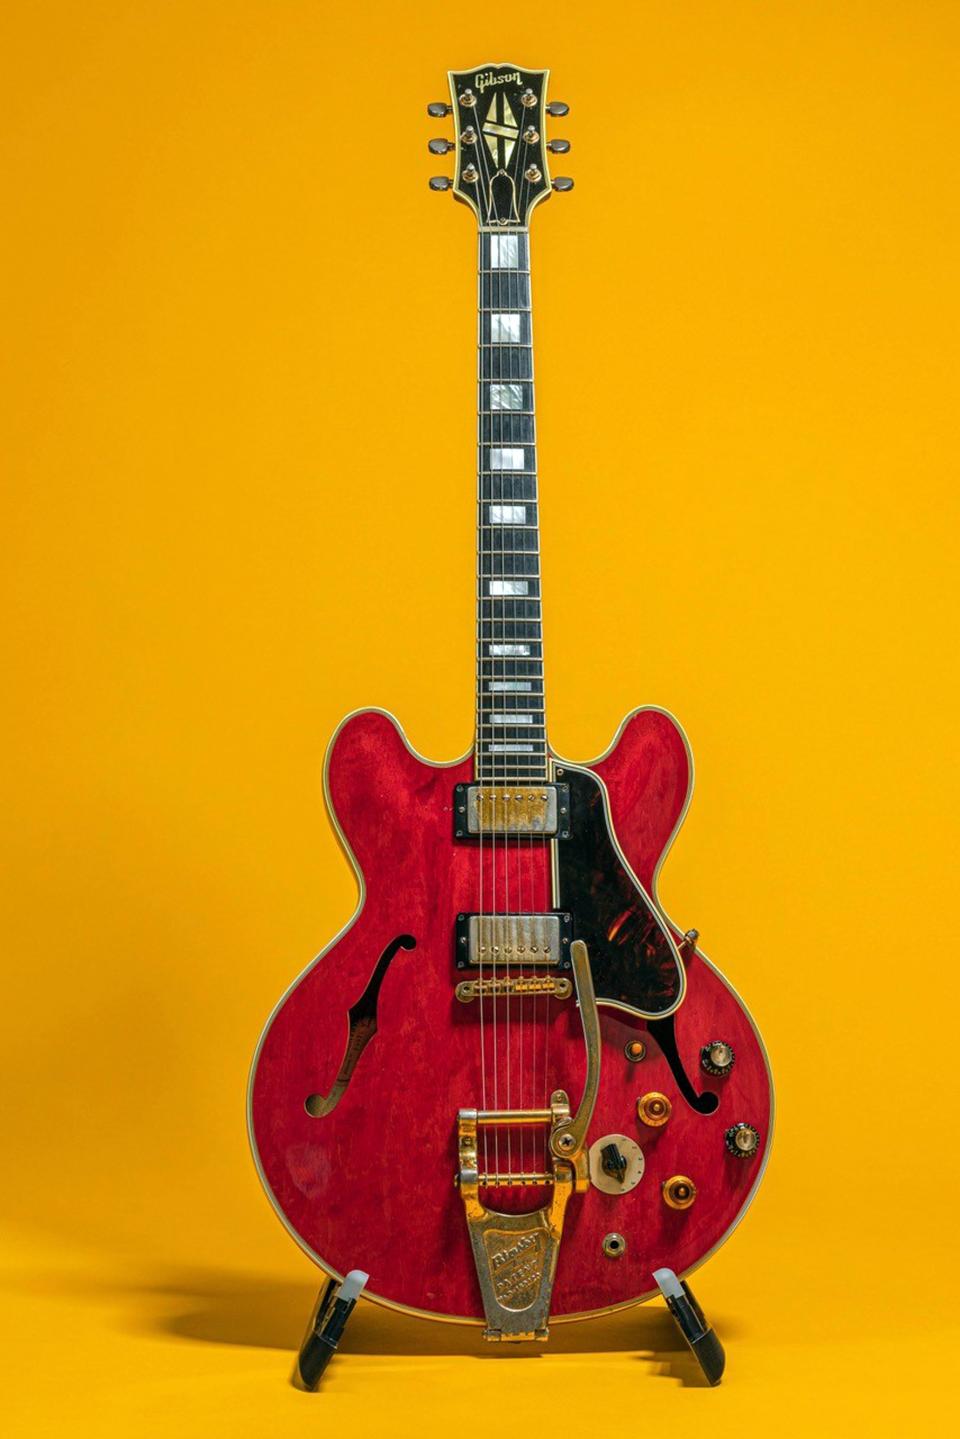 Die rote Gitarre ES-355 des ehemaligen Lead-Gitarristen der Britpopband Oasis, Noel Gallagher